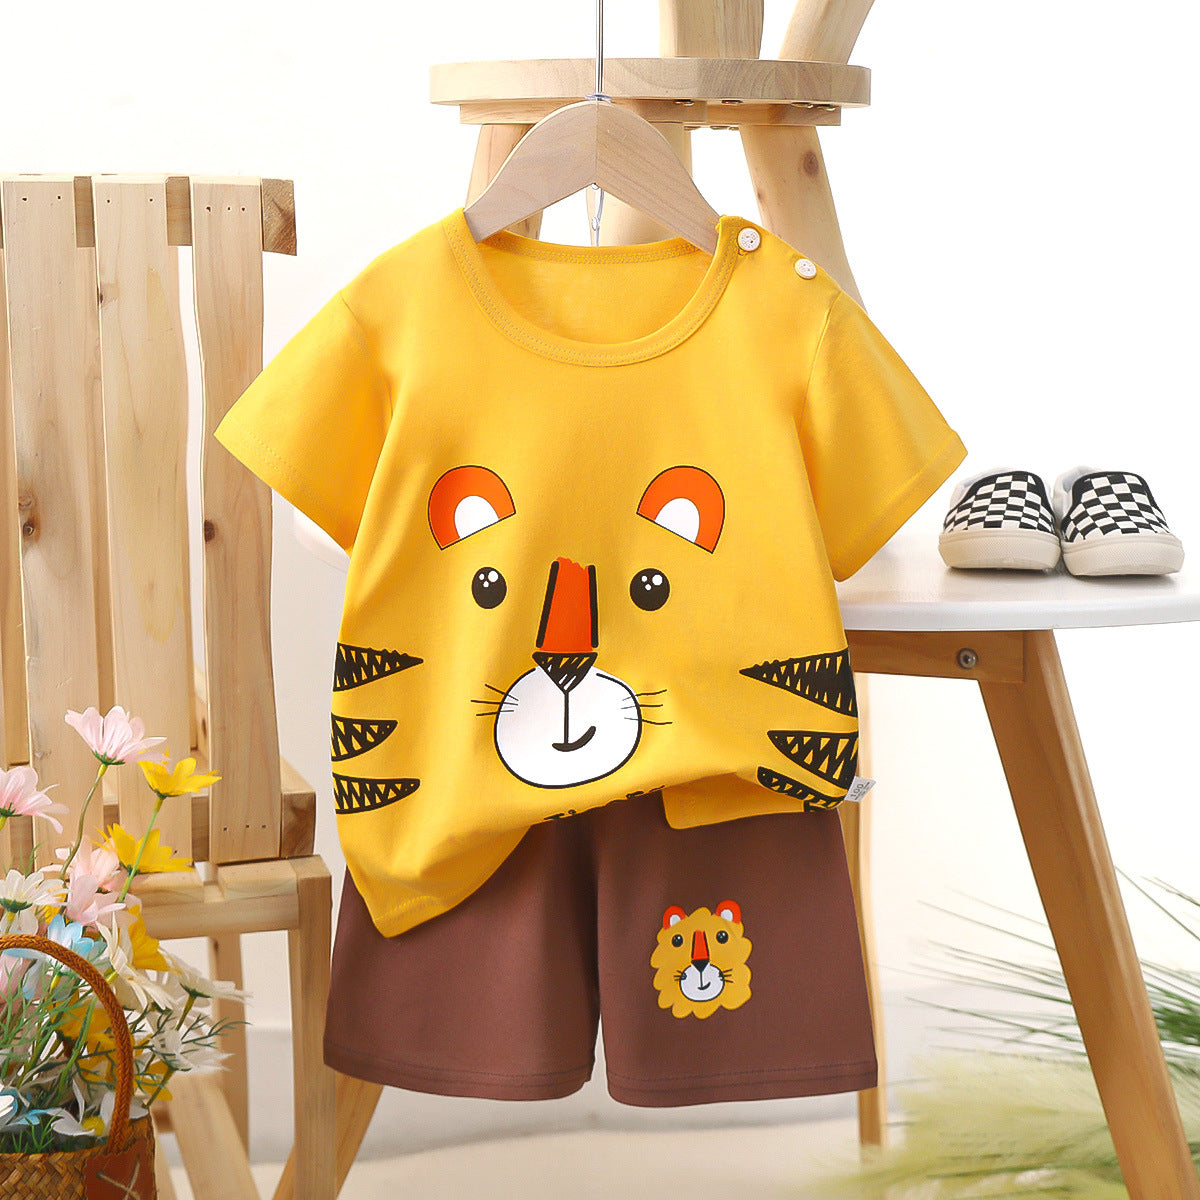 [703122] - Baju Setelan Pendek Homewear Anak Cowok Import Fashion - Motif Smile Lion